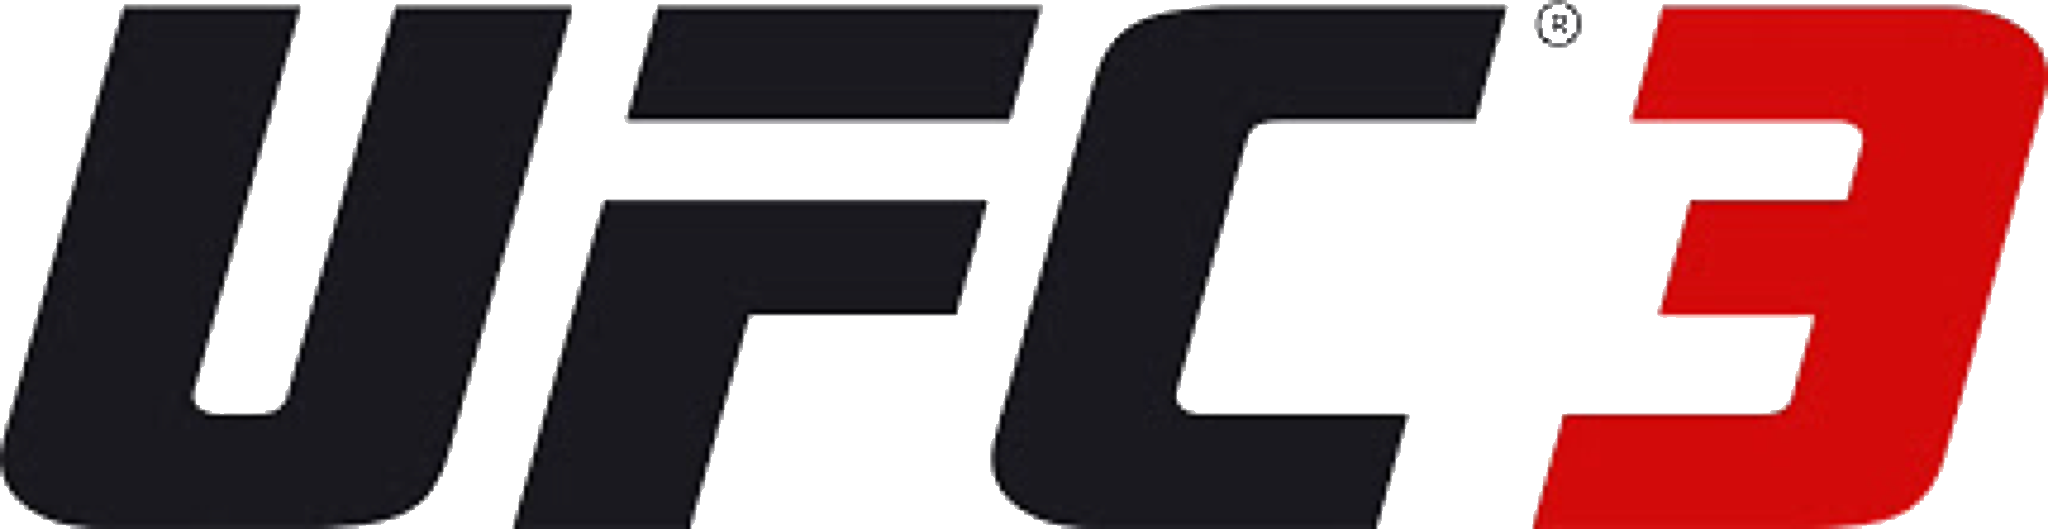 Ufc 2 Logo Png - Ufc 3 Logo Transparent (2048x529), Png Download